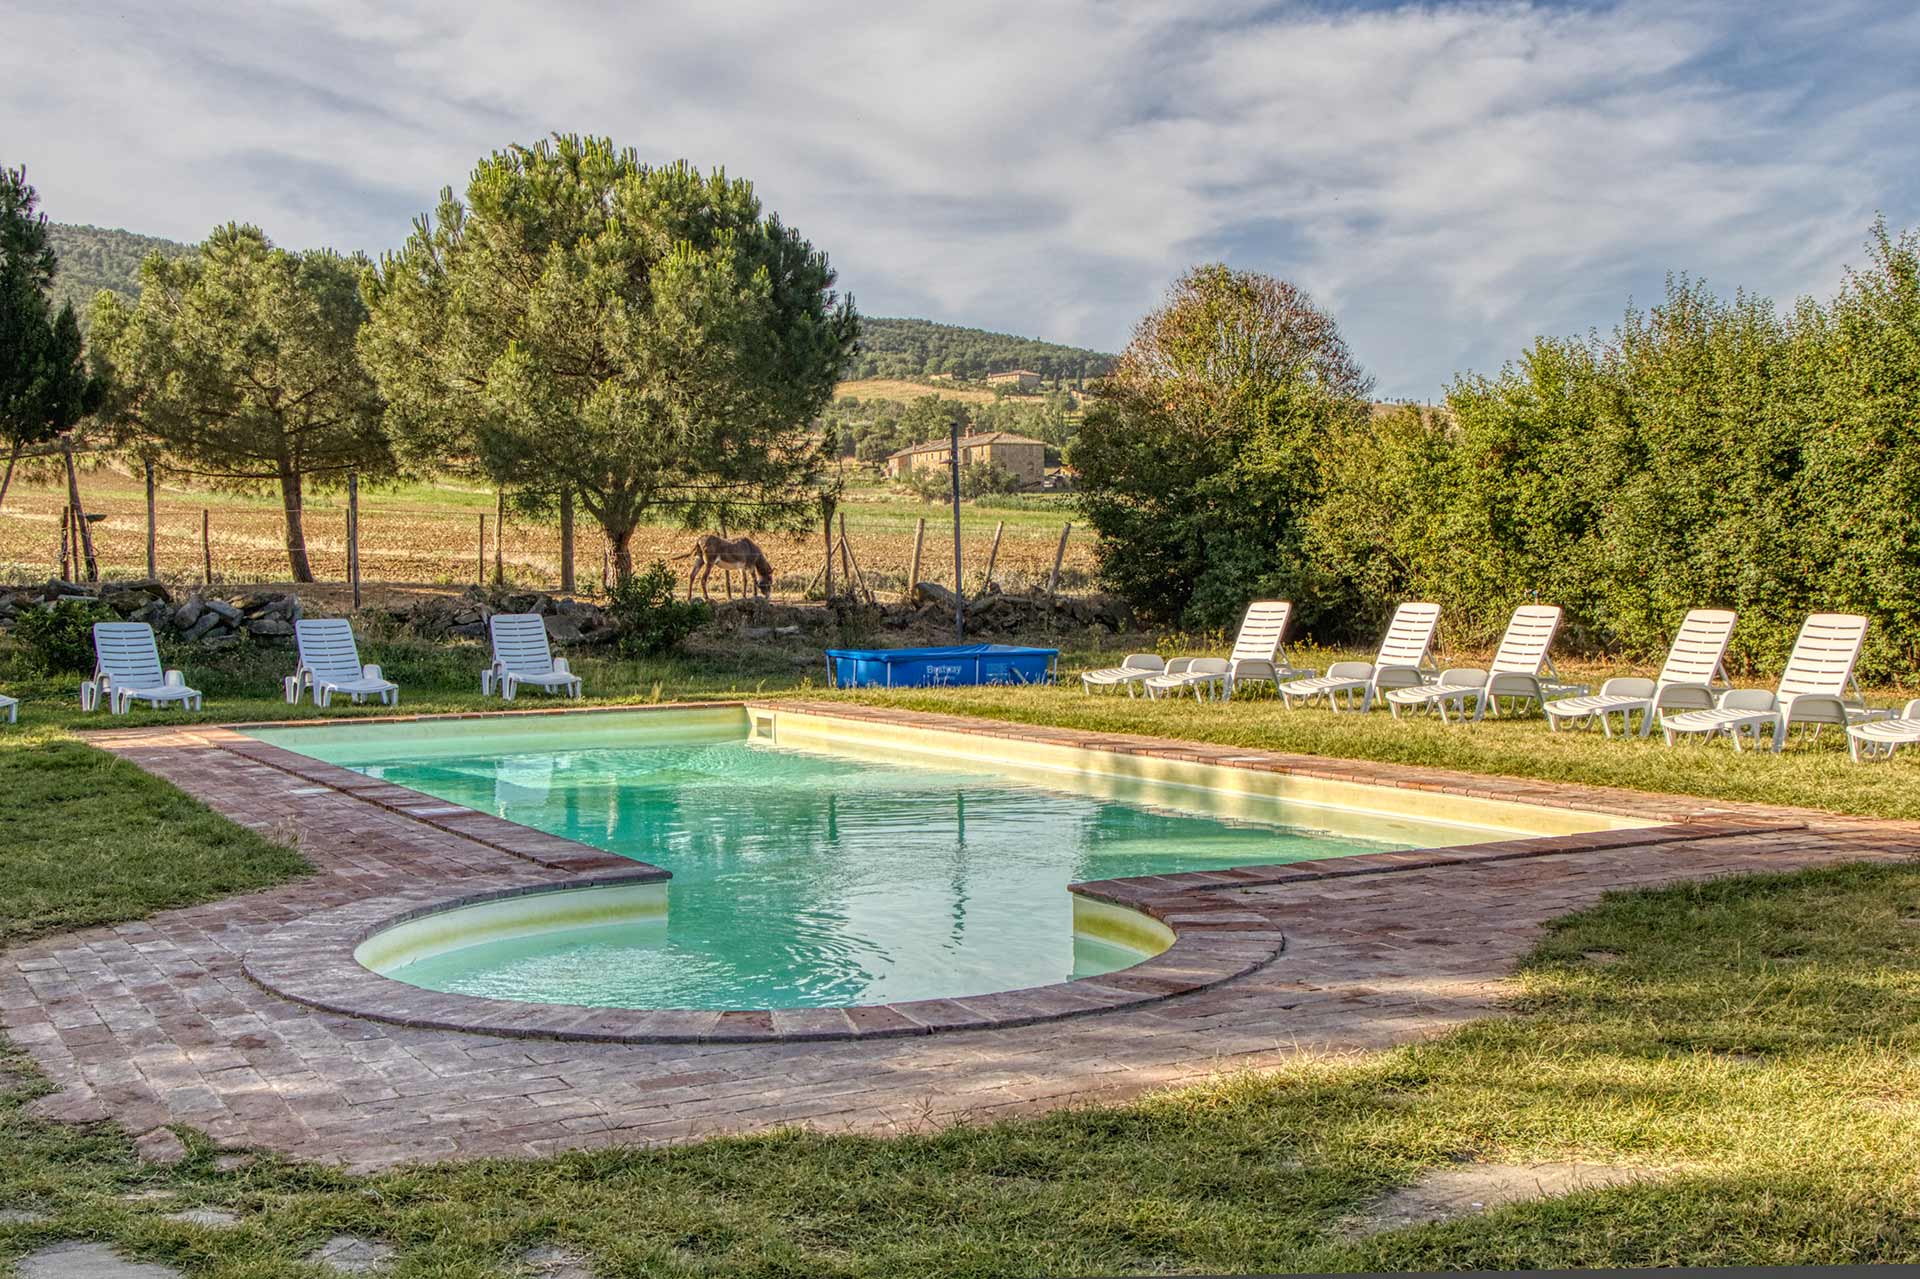 la piscina agriturismo la casa di campagna - The holiday farm La Casa di Campagna is located in the centre of a land rich in history and nature